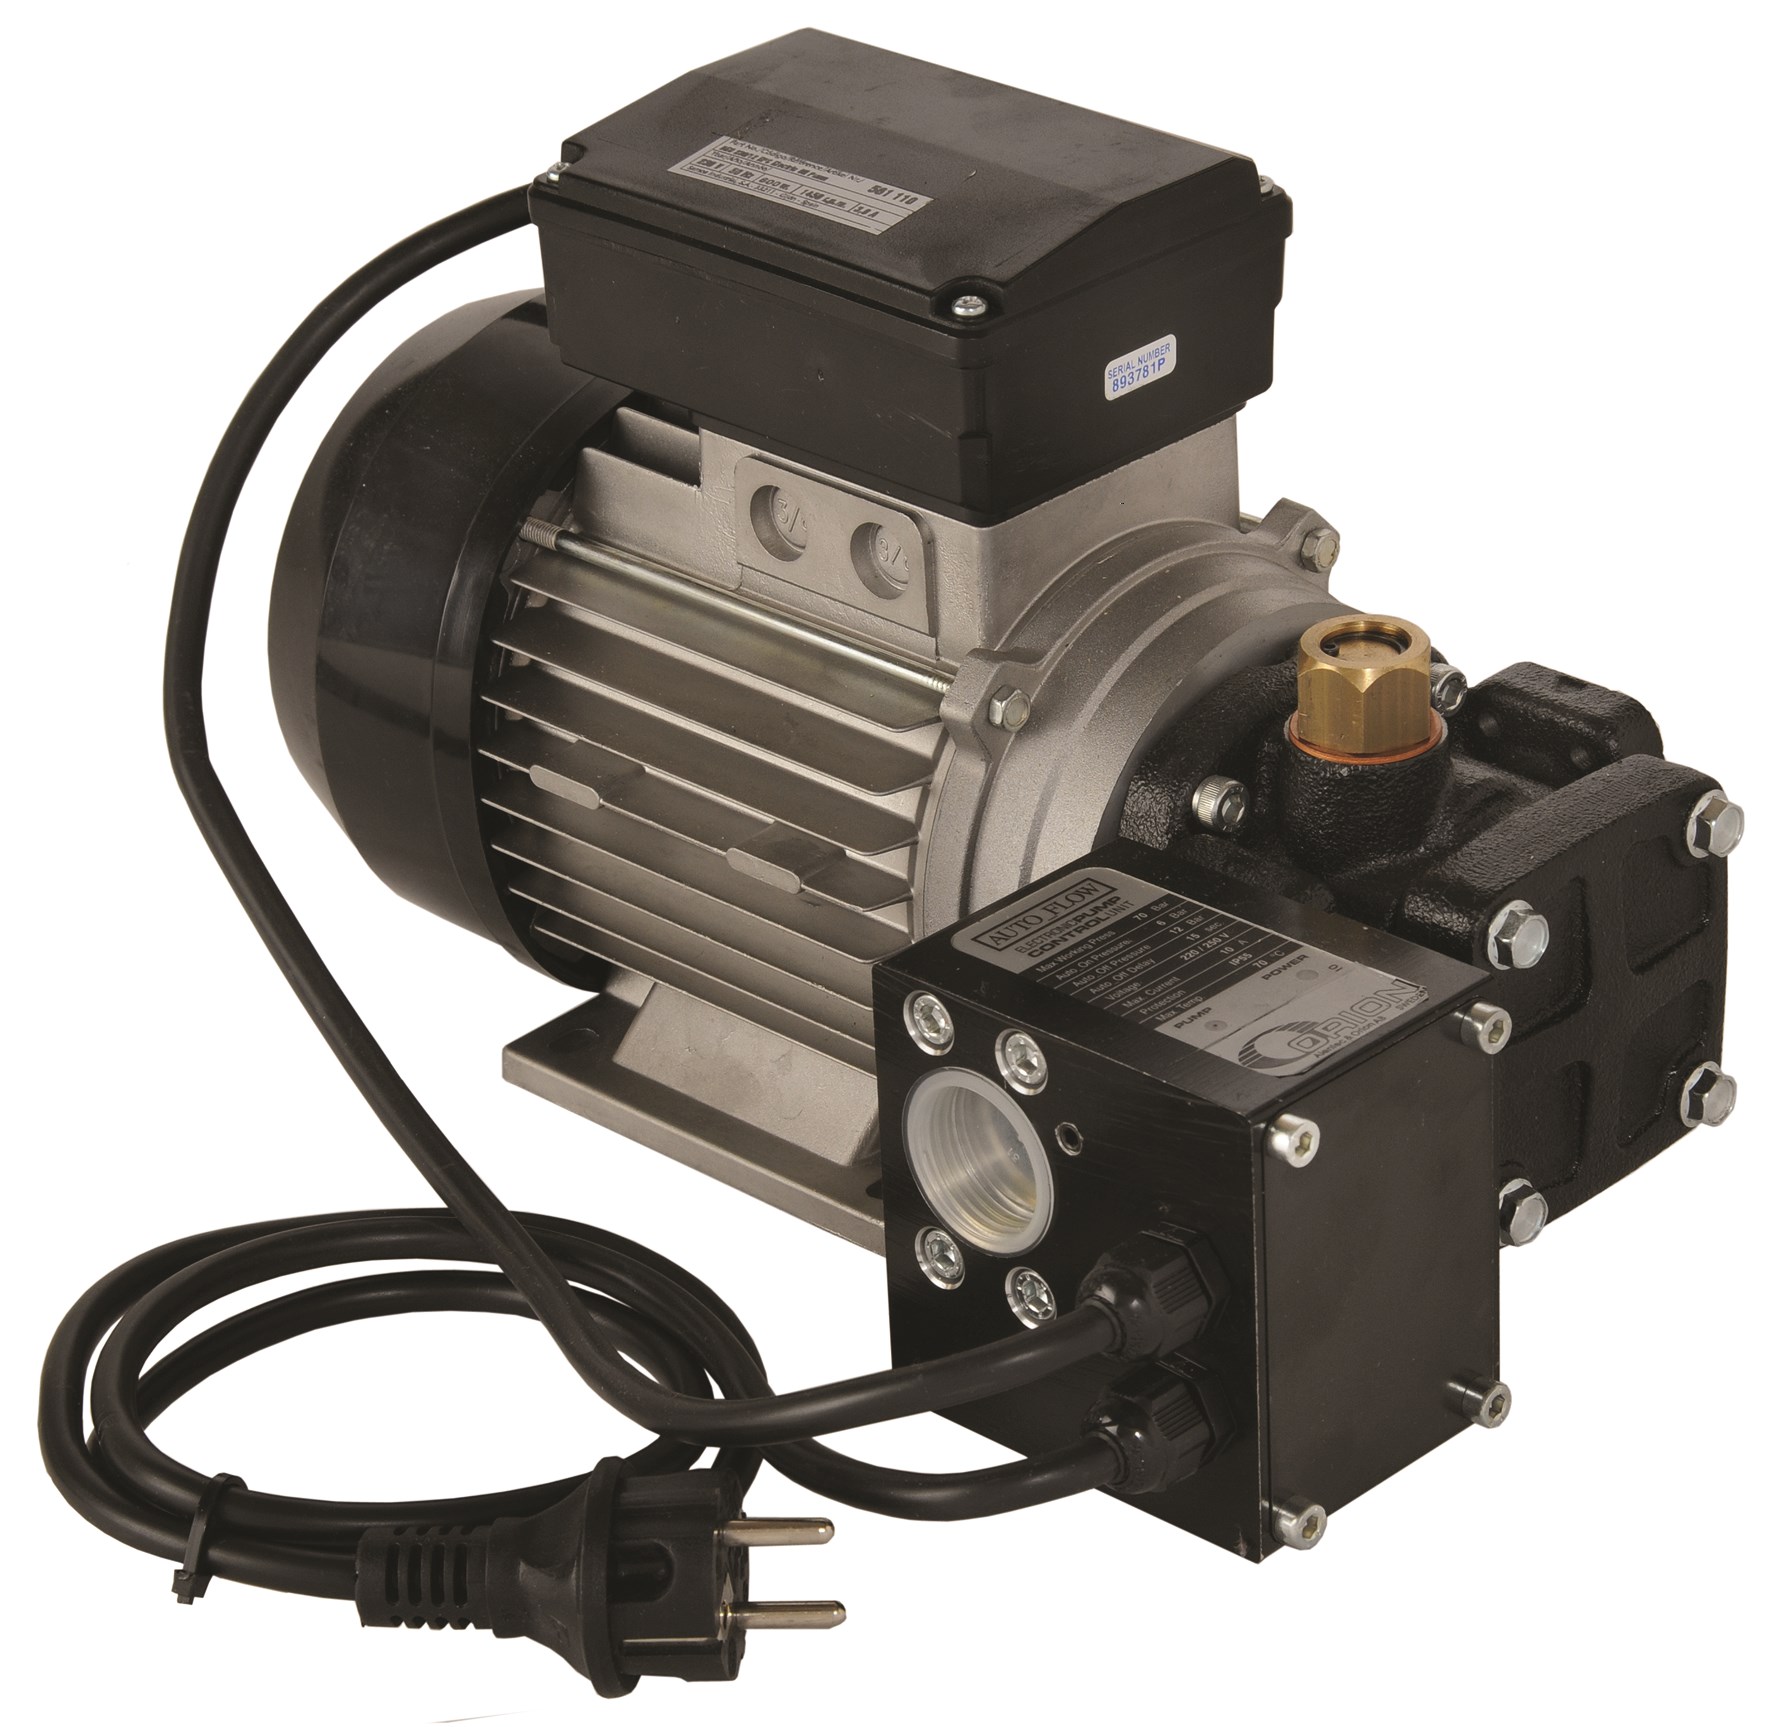 Oil pump, electric 230V 9.5L / min oil pressure switch - Alentec